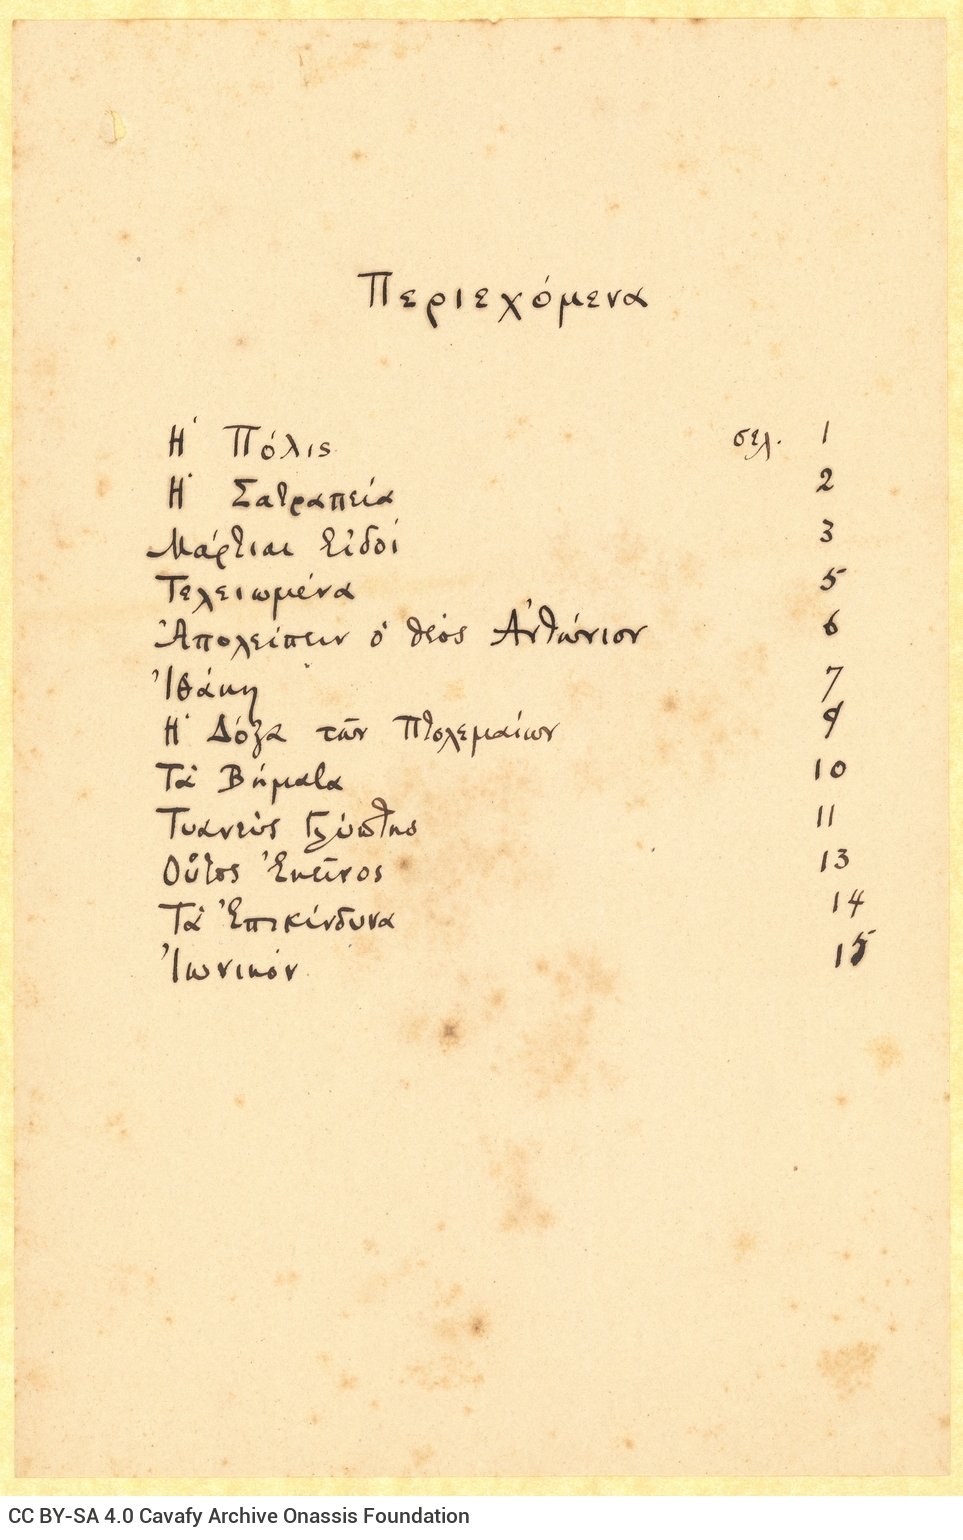 Χειρόγραφος κατάλογος περιεχομένων, γραμμένος στη μία όψη φύλλου, α�